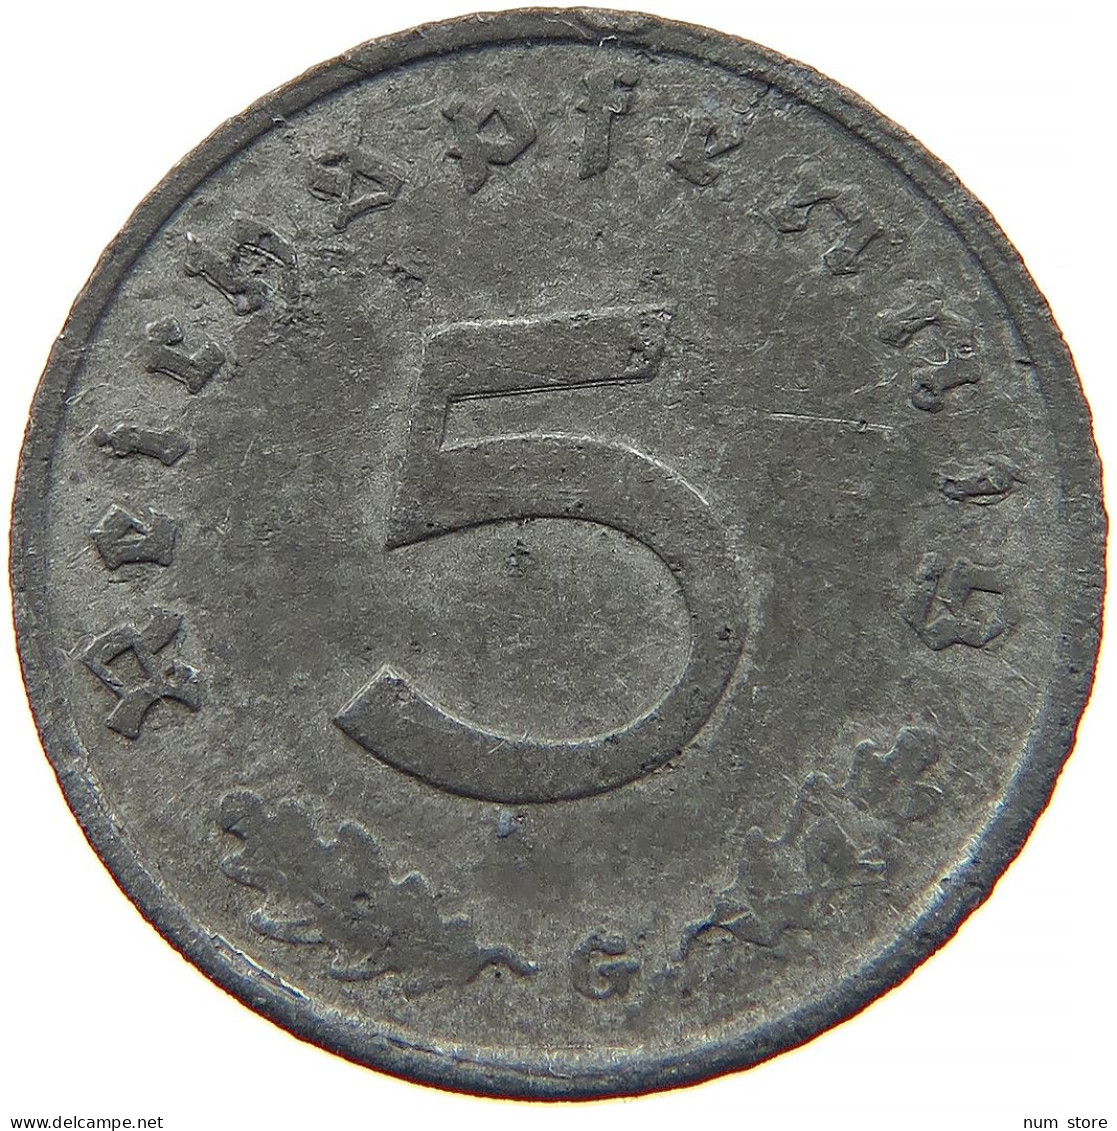 GERMANY 5 REICHSPFENNIG 1941 G #s091 0929 - 5 Reichspfennig